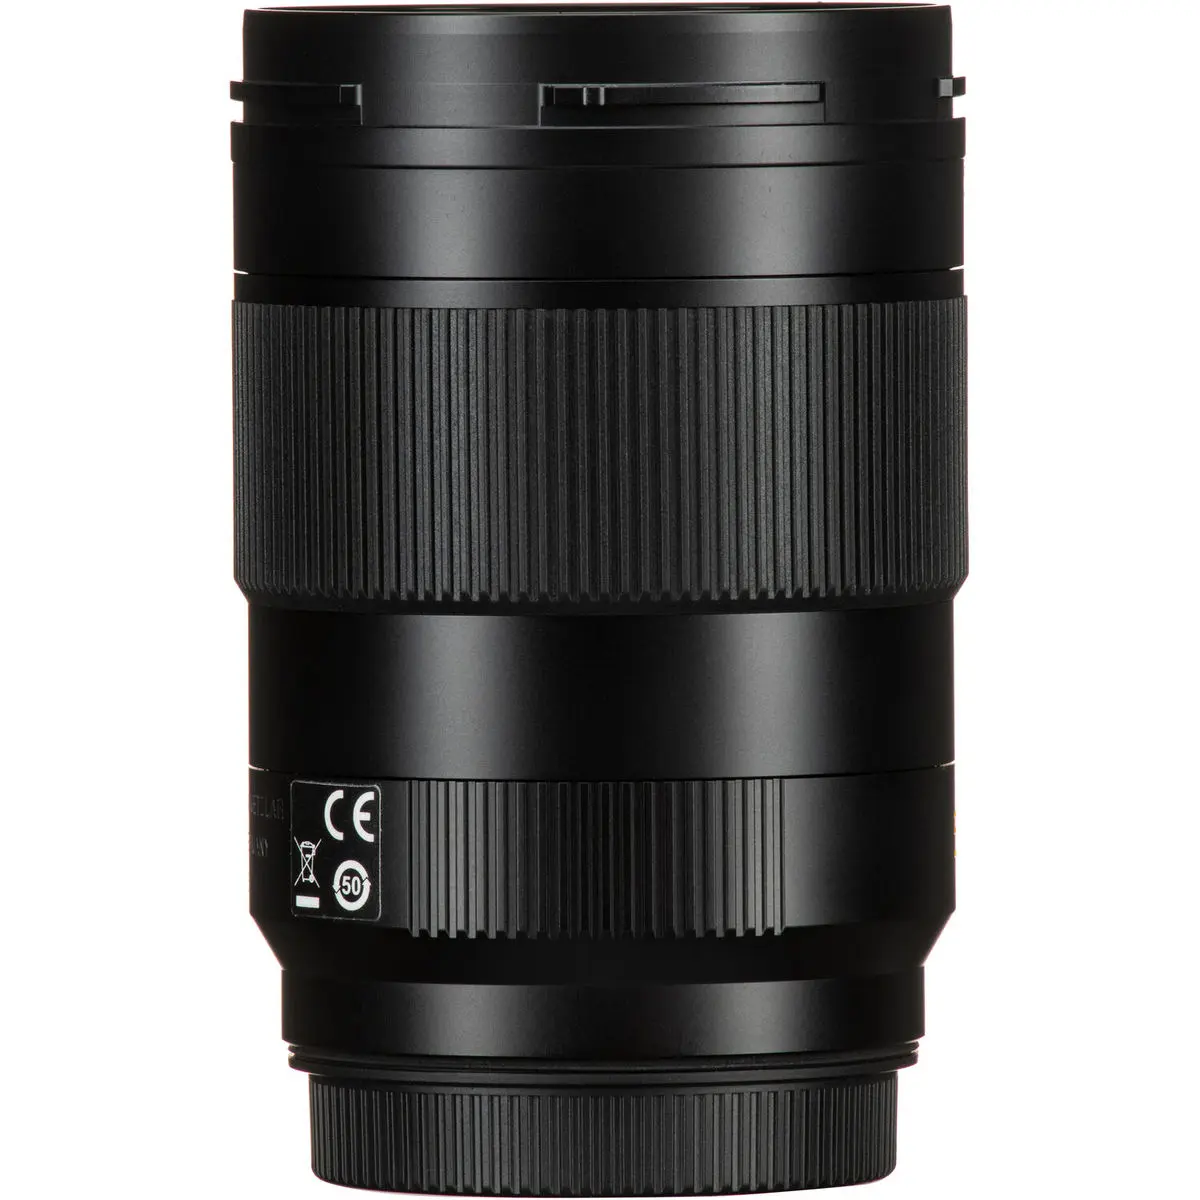 1. Leica APO-Summicron-SL 50mm f/2 Asph. Lens